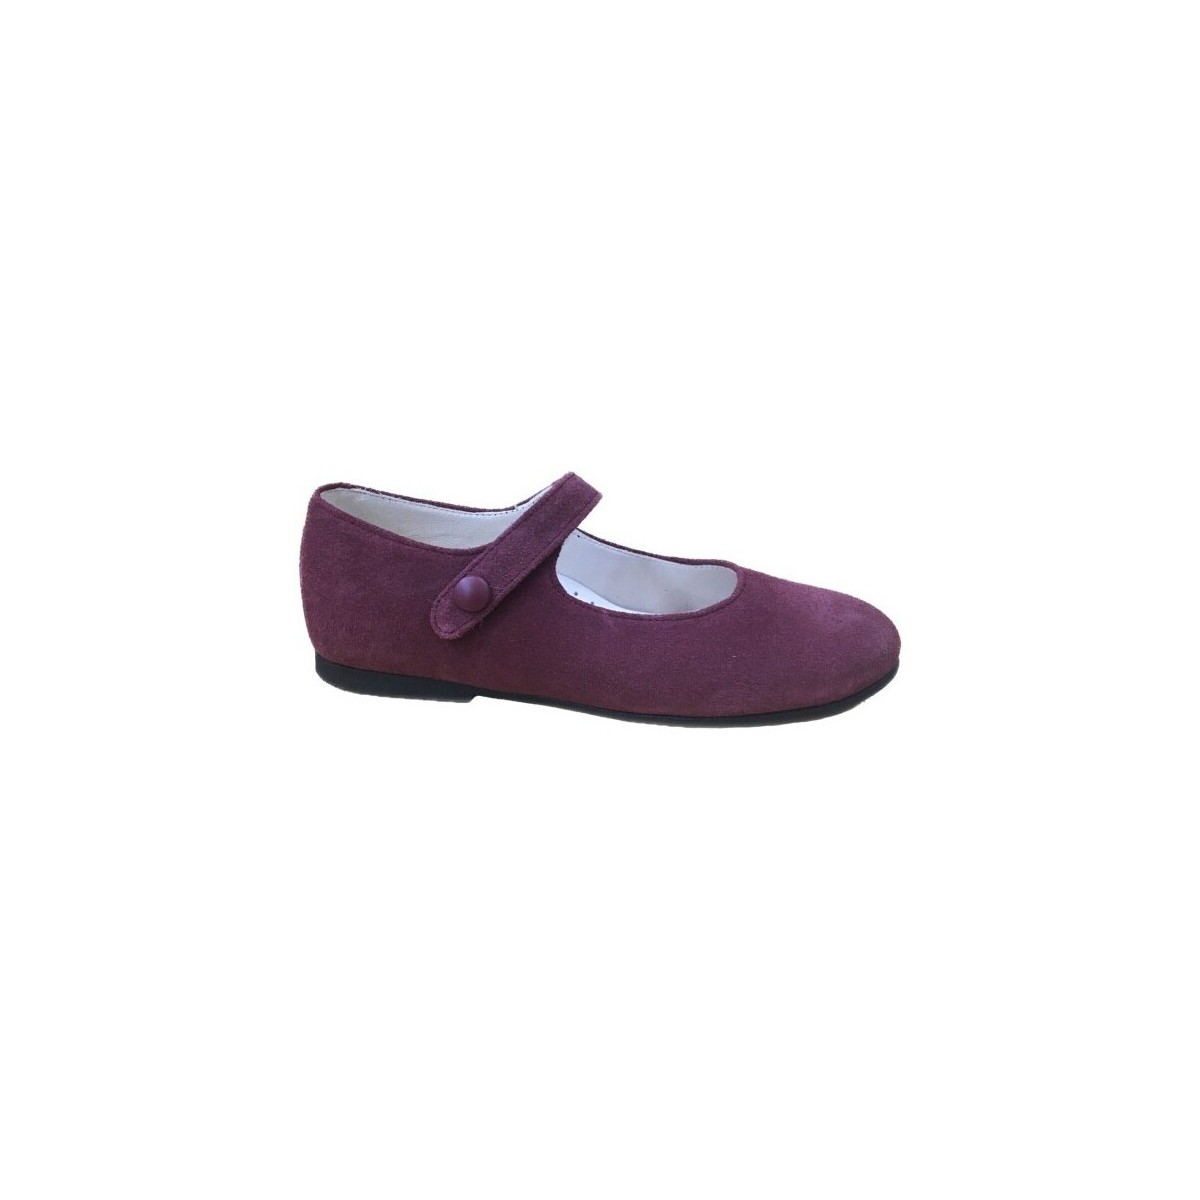 Παπούτσια Κορίτσι Μπαλαρίνες Colores 26967-18 Bordeaux